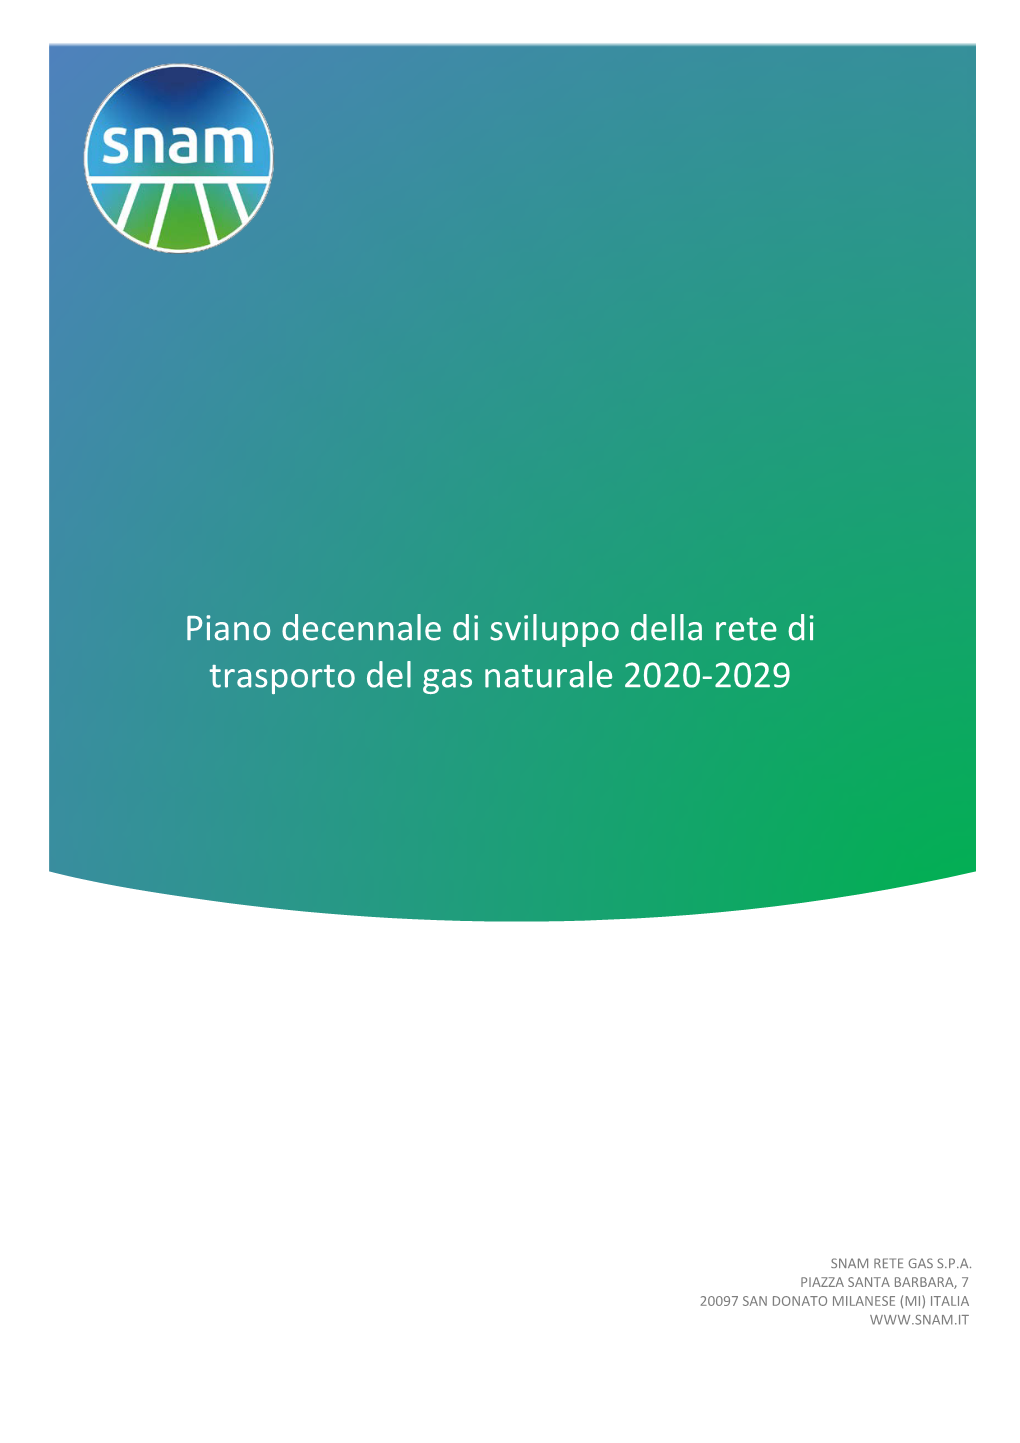 Piano Decennale Di Sviluppo Della Rete Di Trasporto Del Gas Naturale 2020-2029